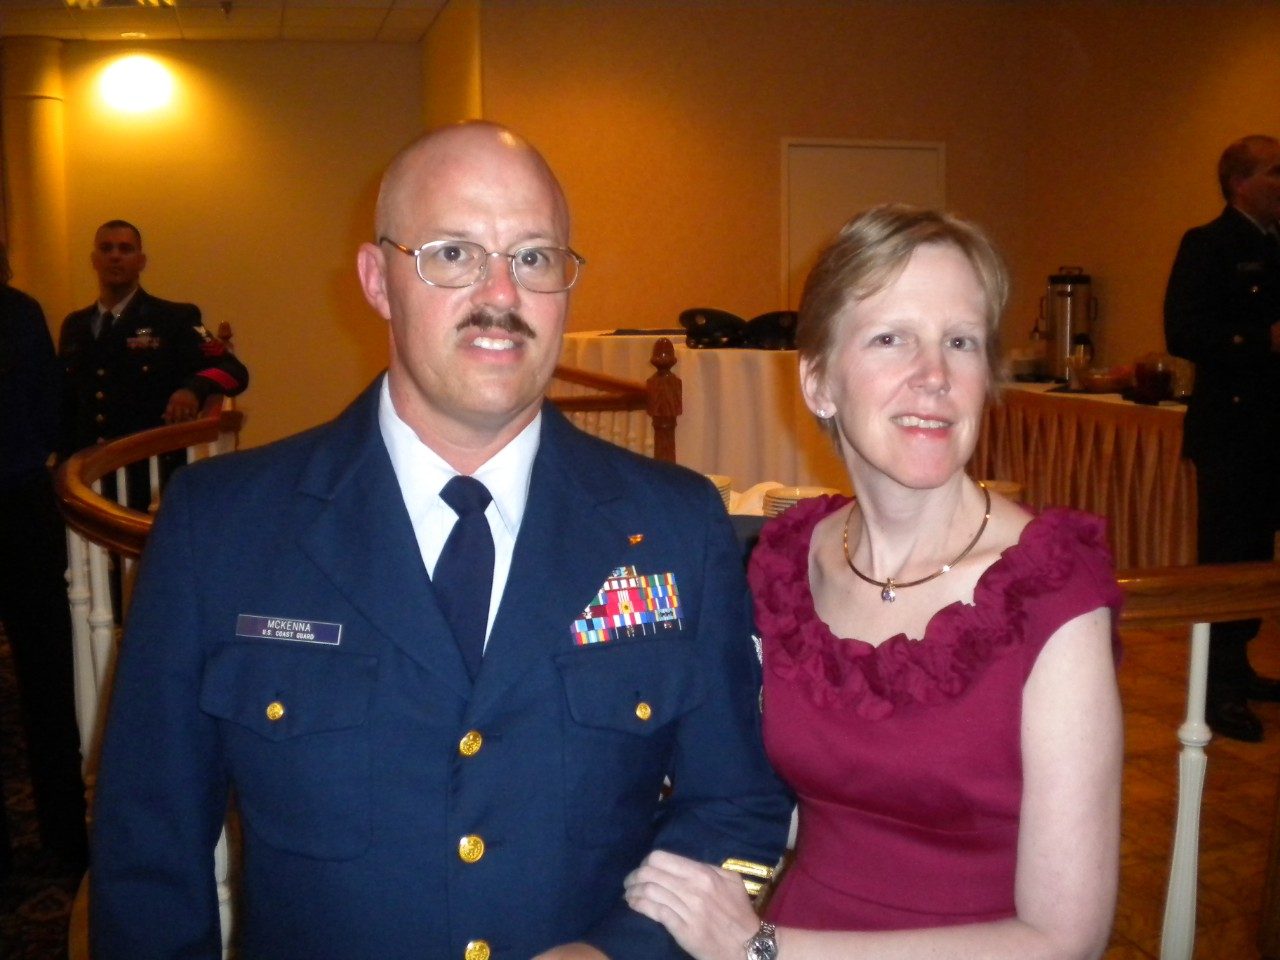 恶性胶质瘤幸存者Jacqueline McKenna和她的丈夫Todd